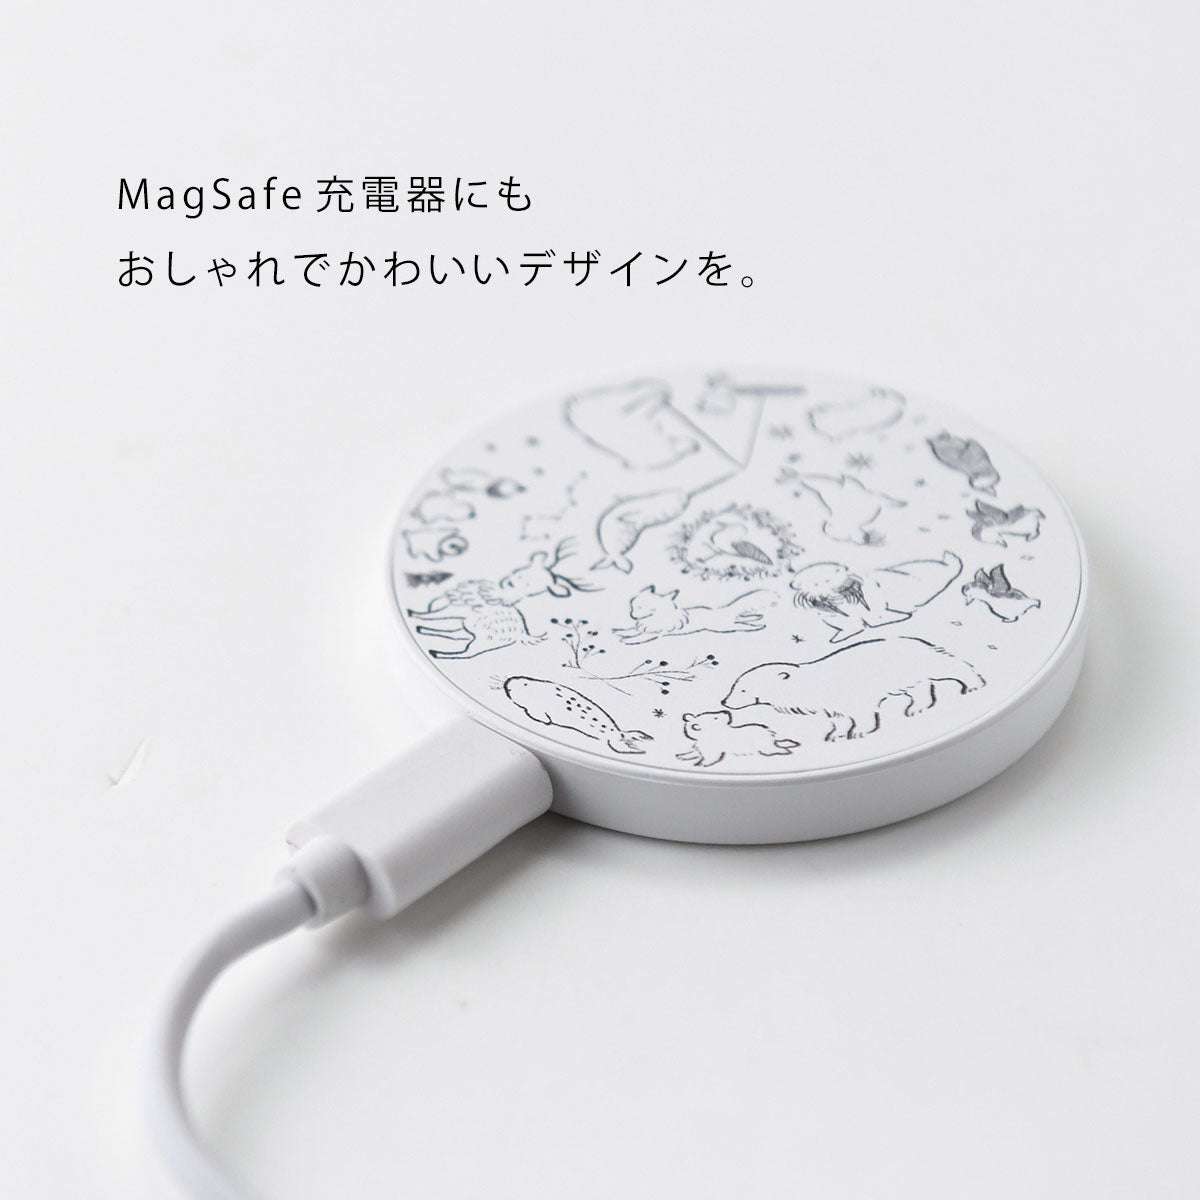 MagSafe 充電器 おしゃれ マグセーフ充電器 iPhone13 pro iPhone12 qi 充電器 しろくま